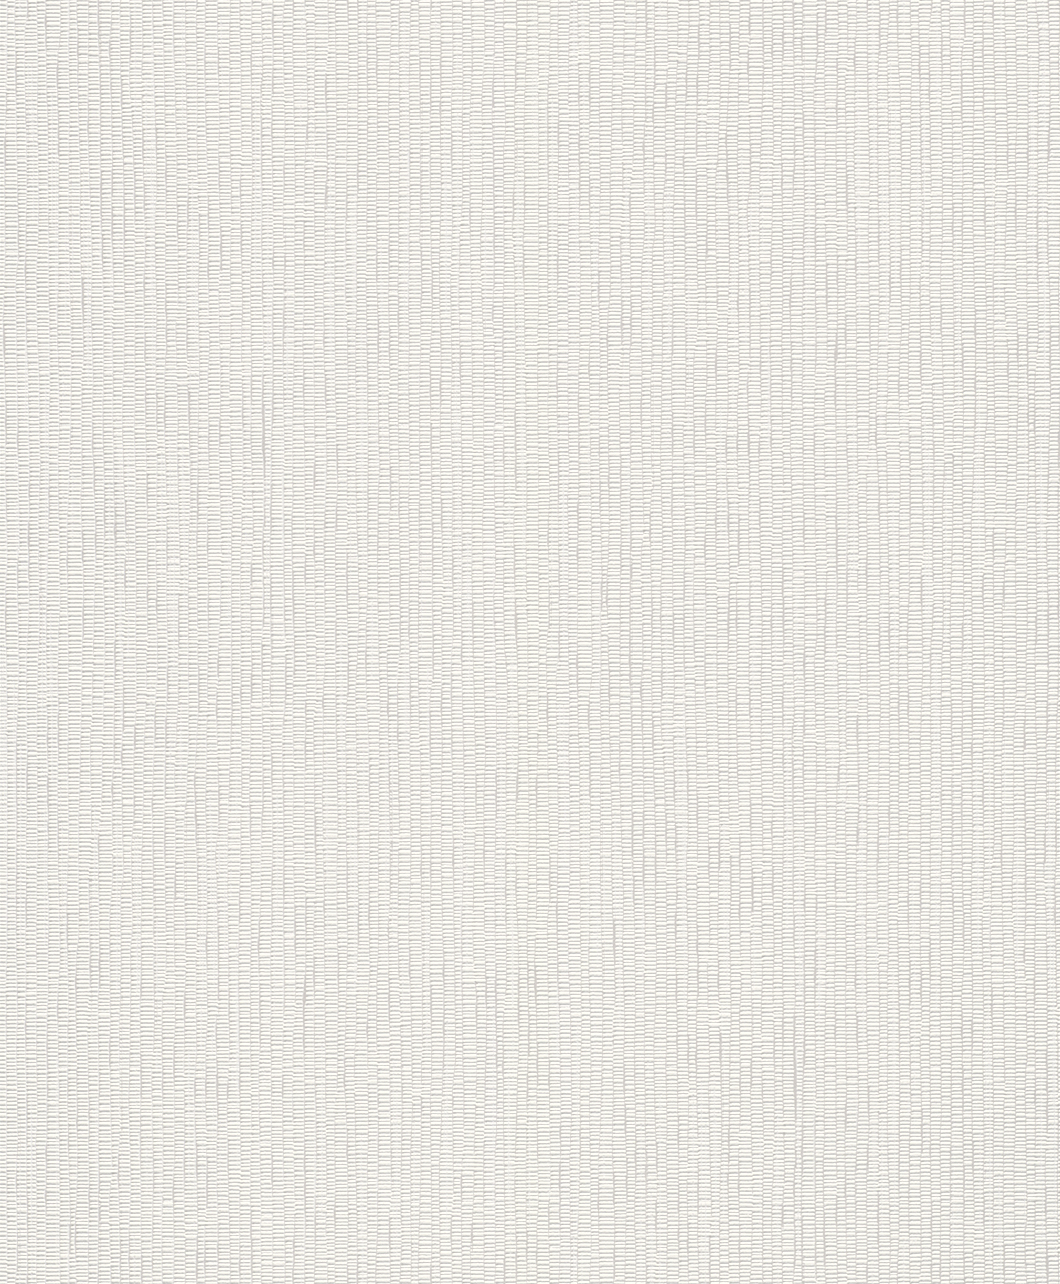 Krém színű struktúrált mintázatú tapéta